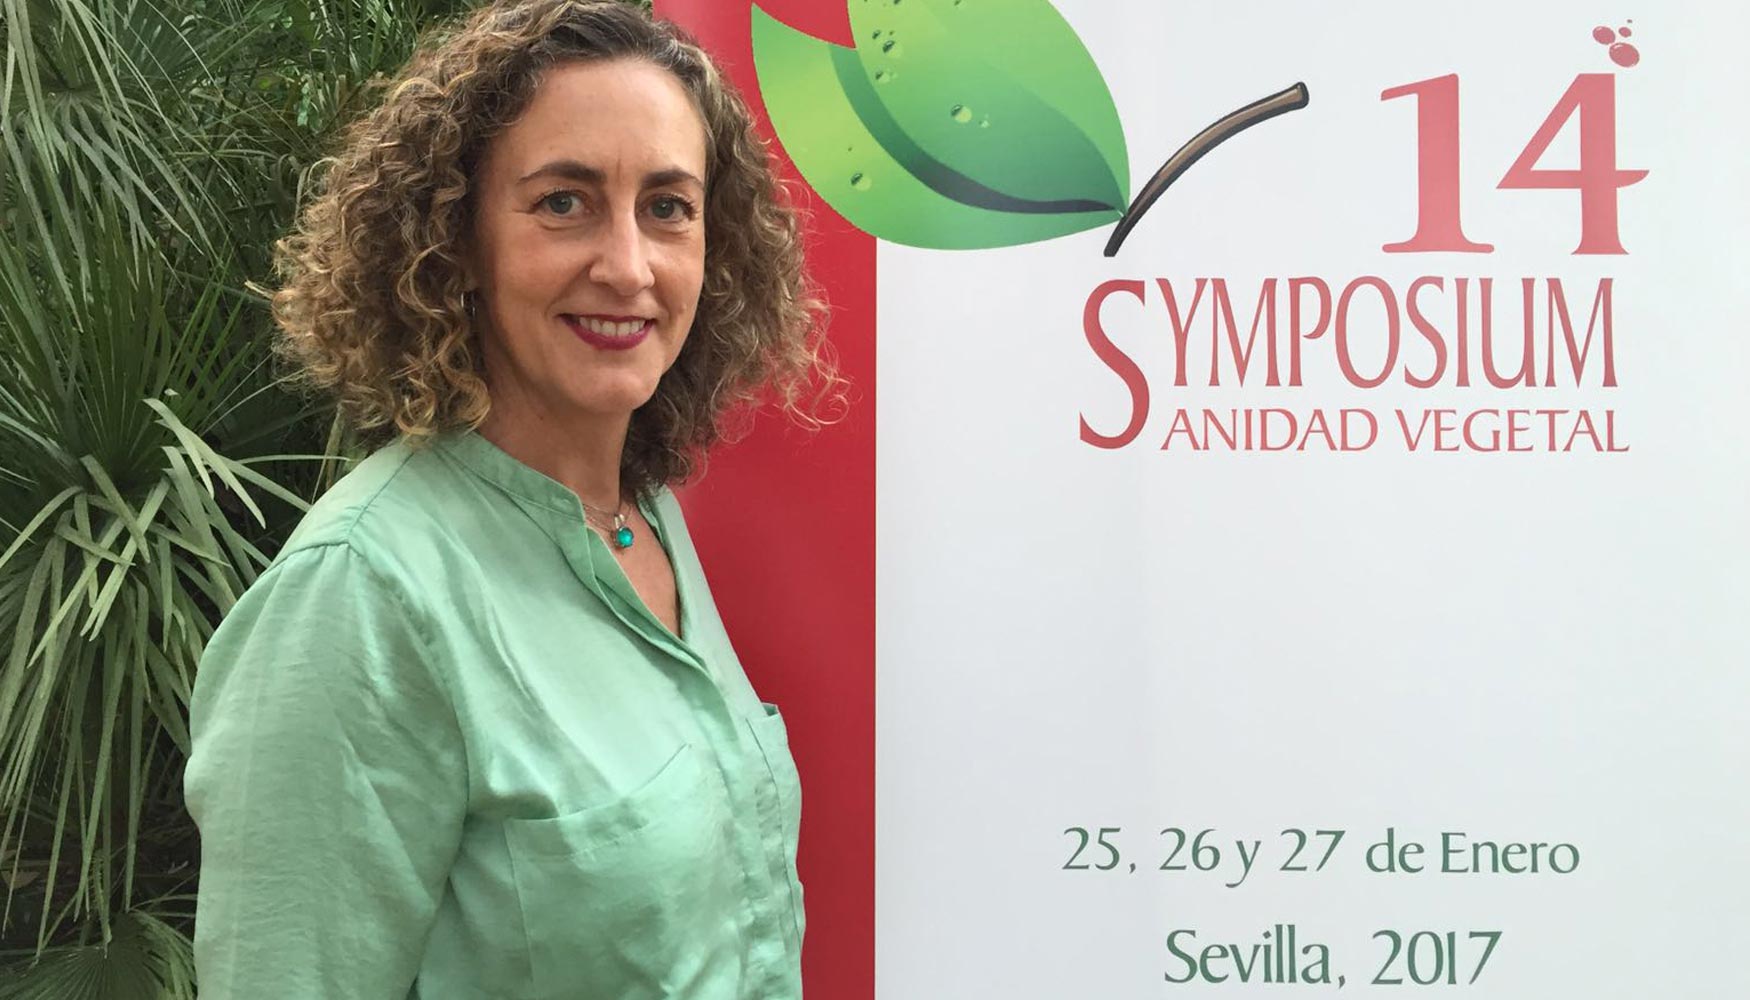 Mara Cruz Ledro del guila, nueva presidenta del Symposium Nacional de Sanidad Vegetal